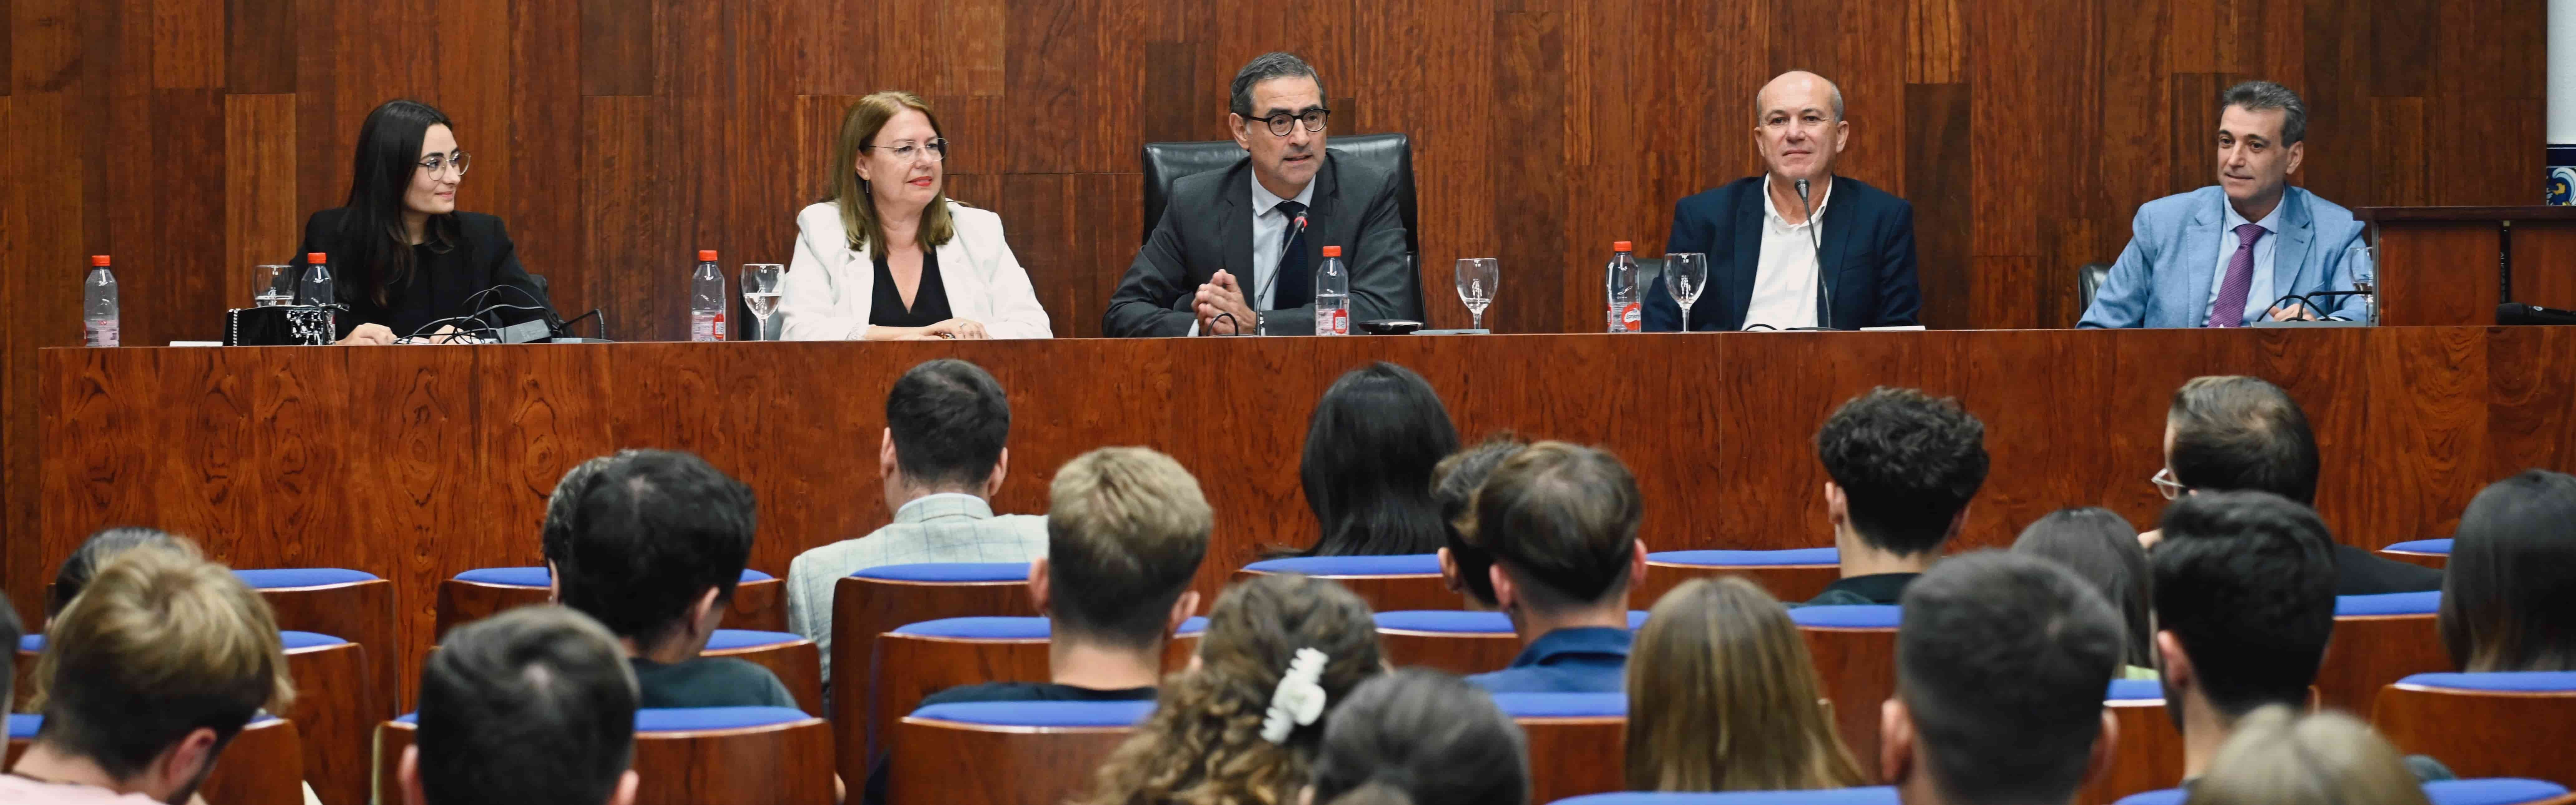 El Aula de Debate de la Universidad de Murcia inaugura el curso